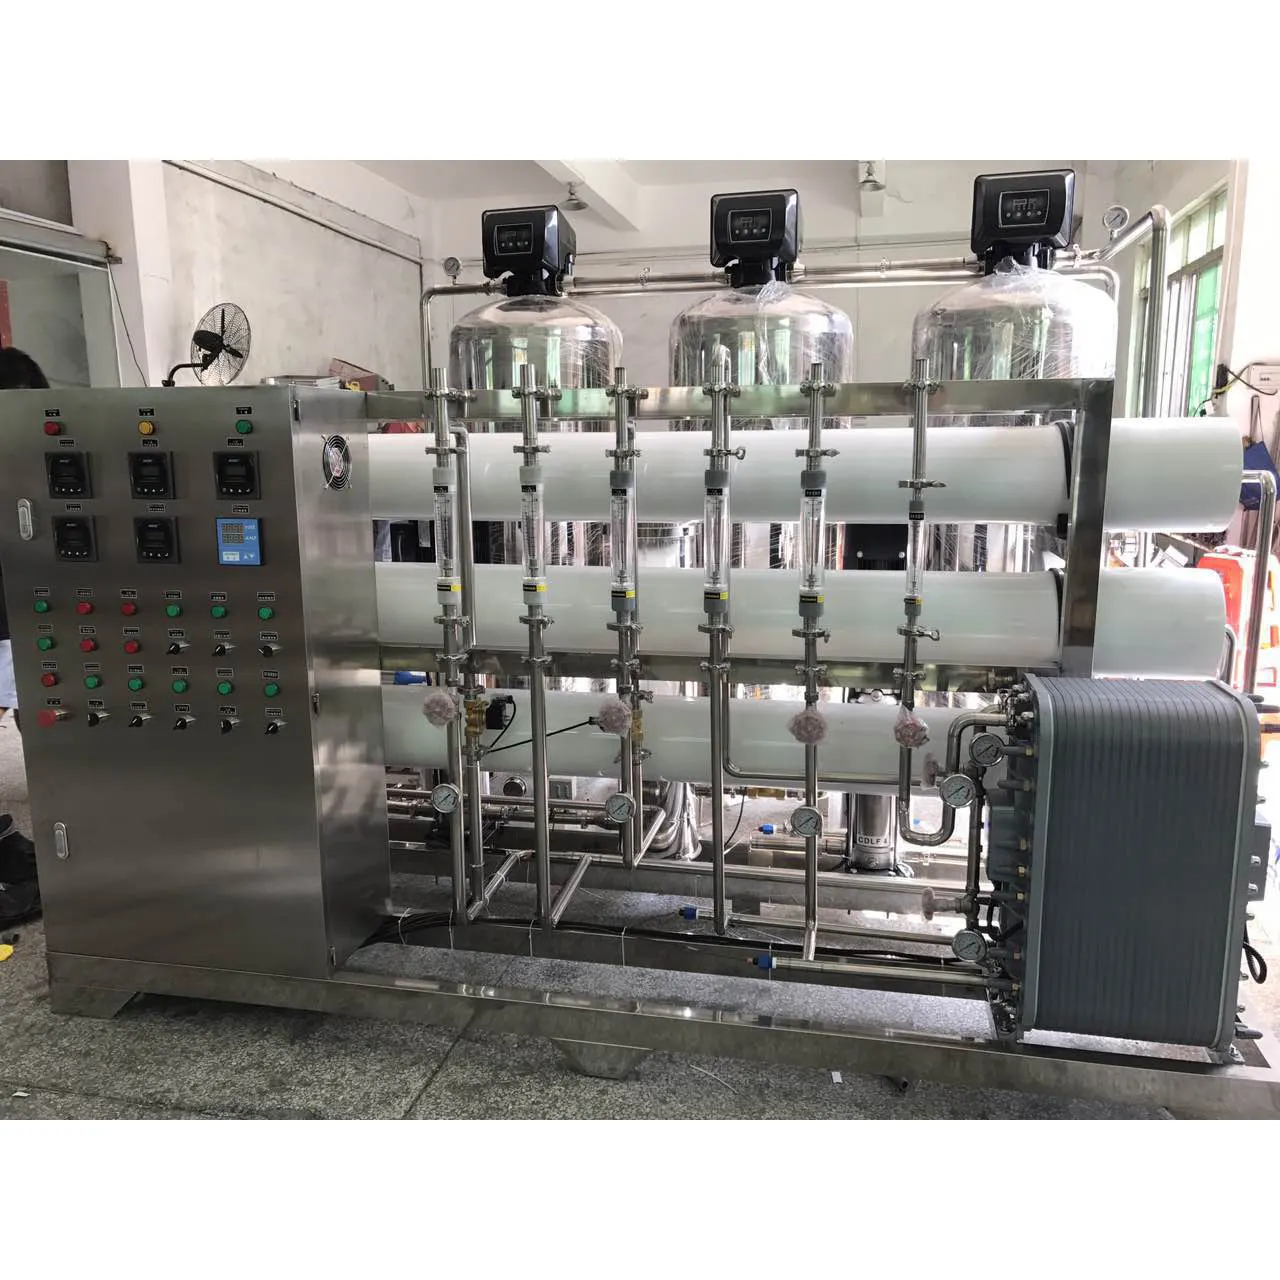 Impianto per il trattamento delle acque permeato filtro per la pulizia del sistema di membrana uv a osmosi inversa rubinetto macchina depuratore d'acqua